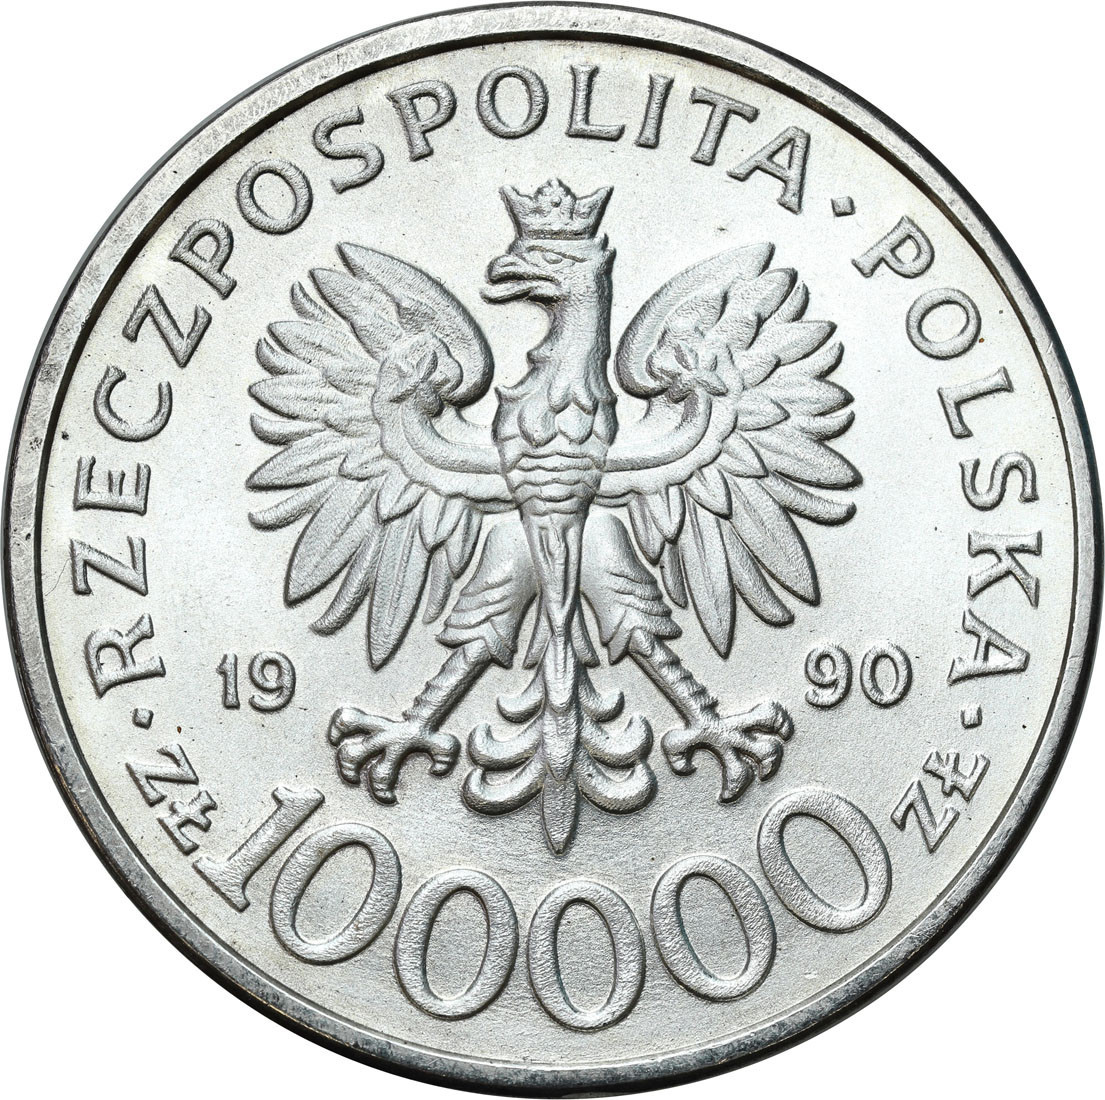 III RP. 100 000 złotych 1990 Solidarność typ C – RZADKIE